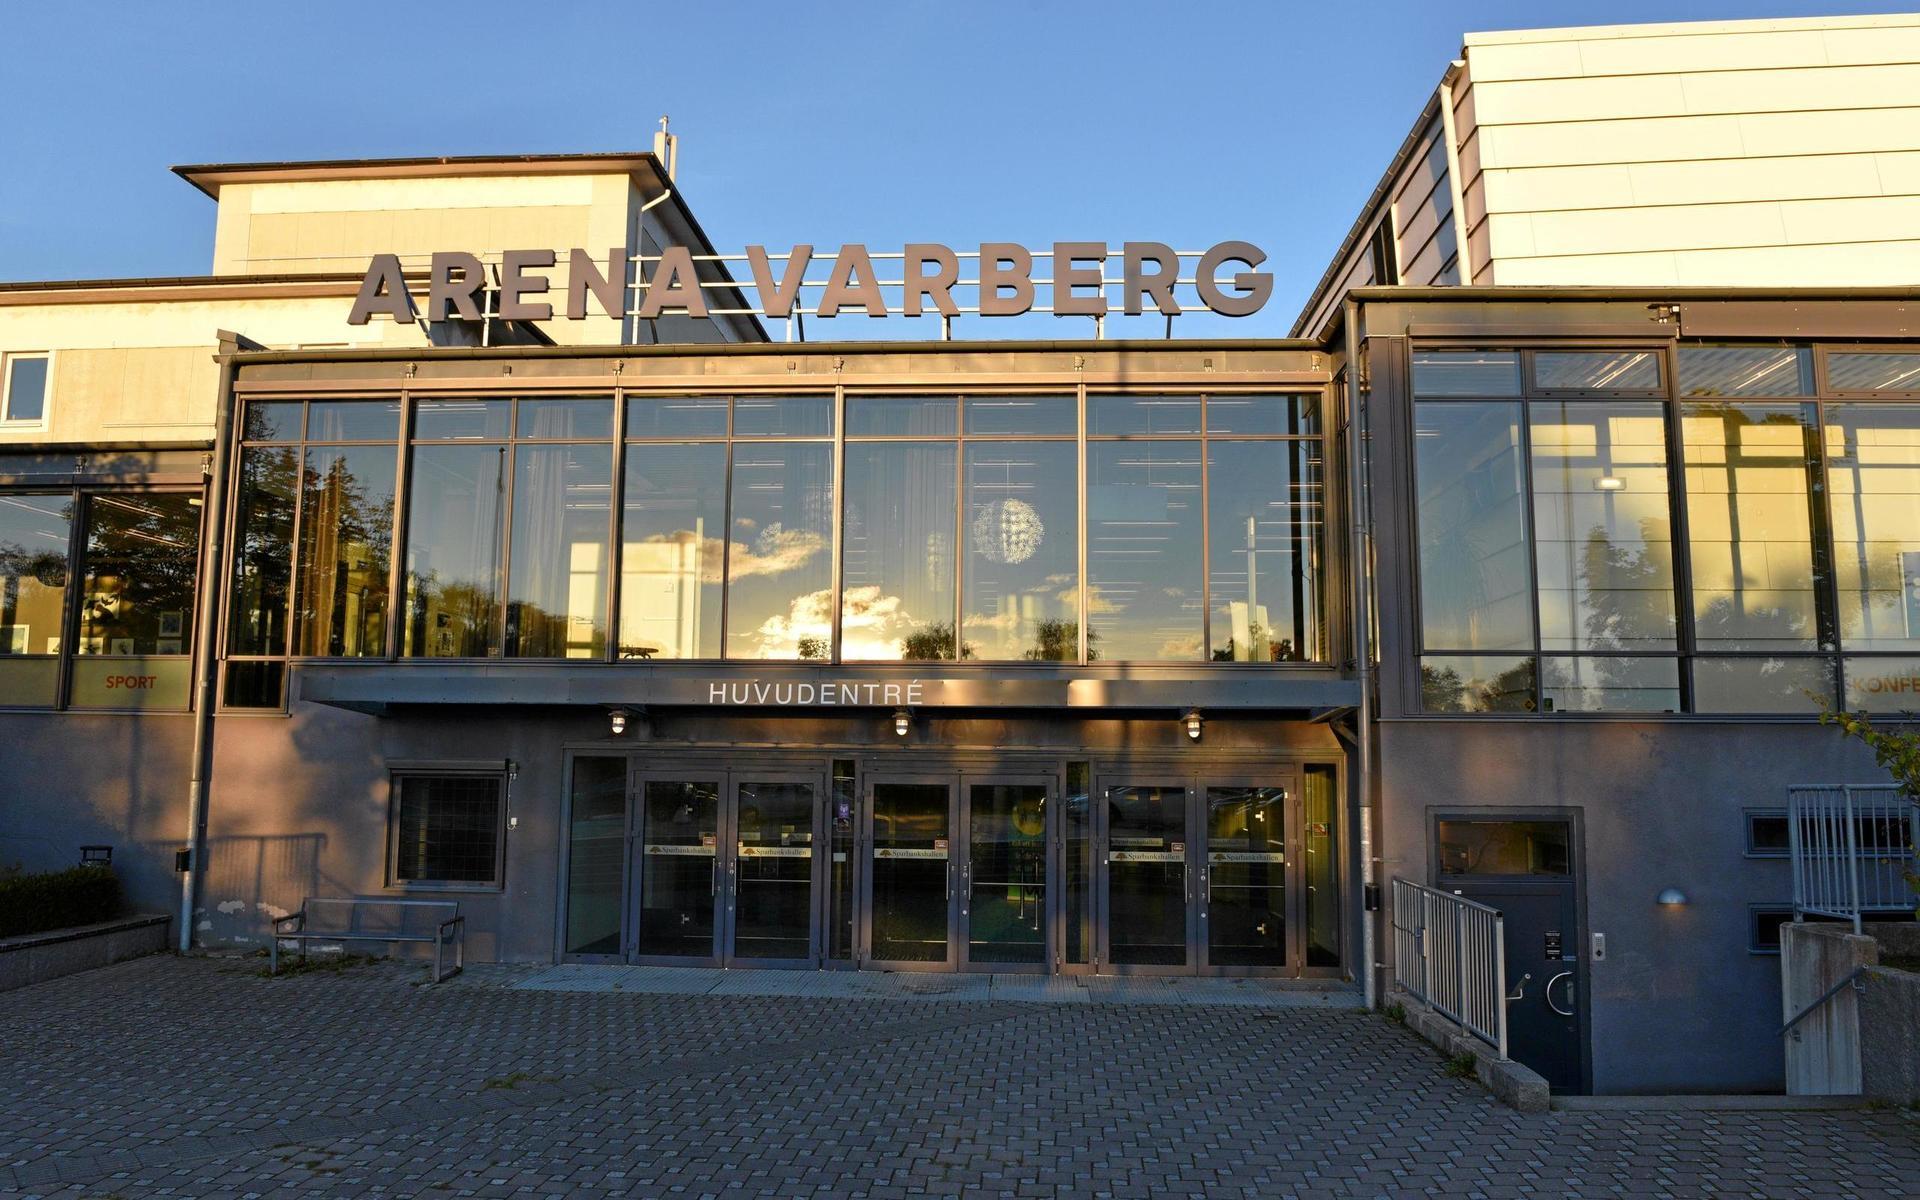 Vad restaurangens konkurs innebär för Arena Varbergs verksamhet är ännu oklart.